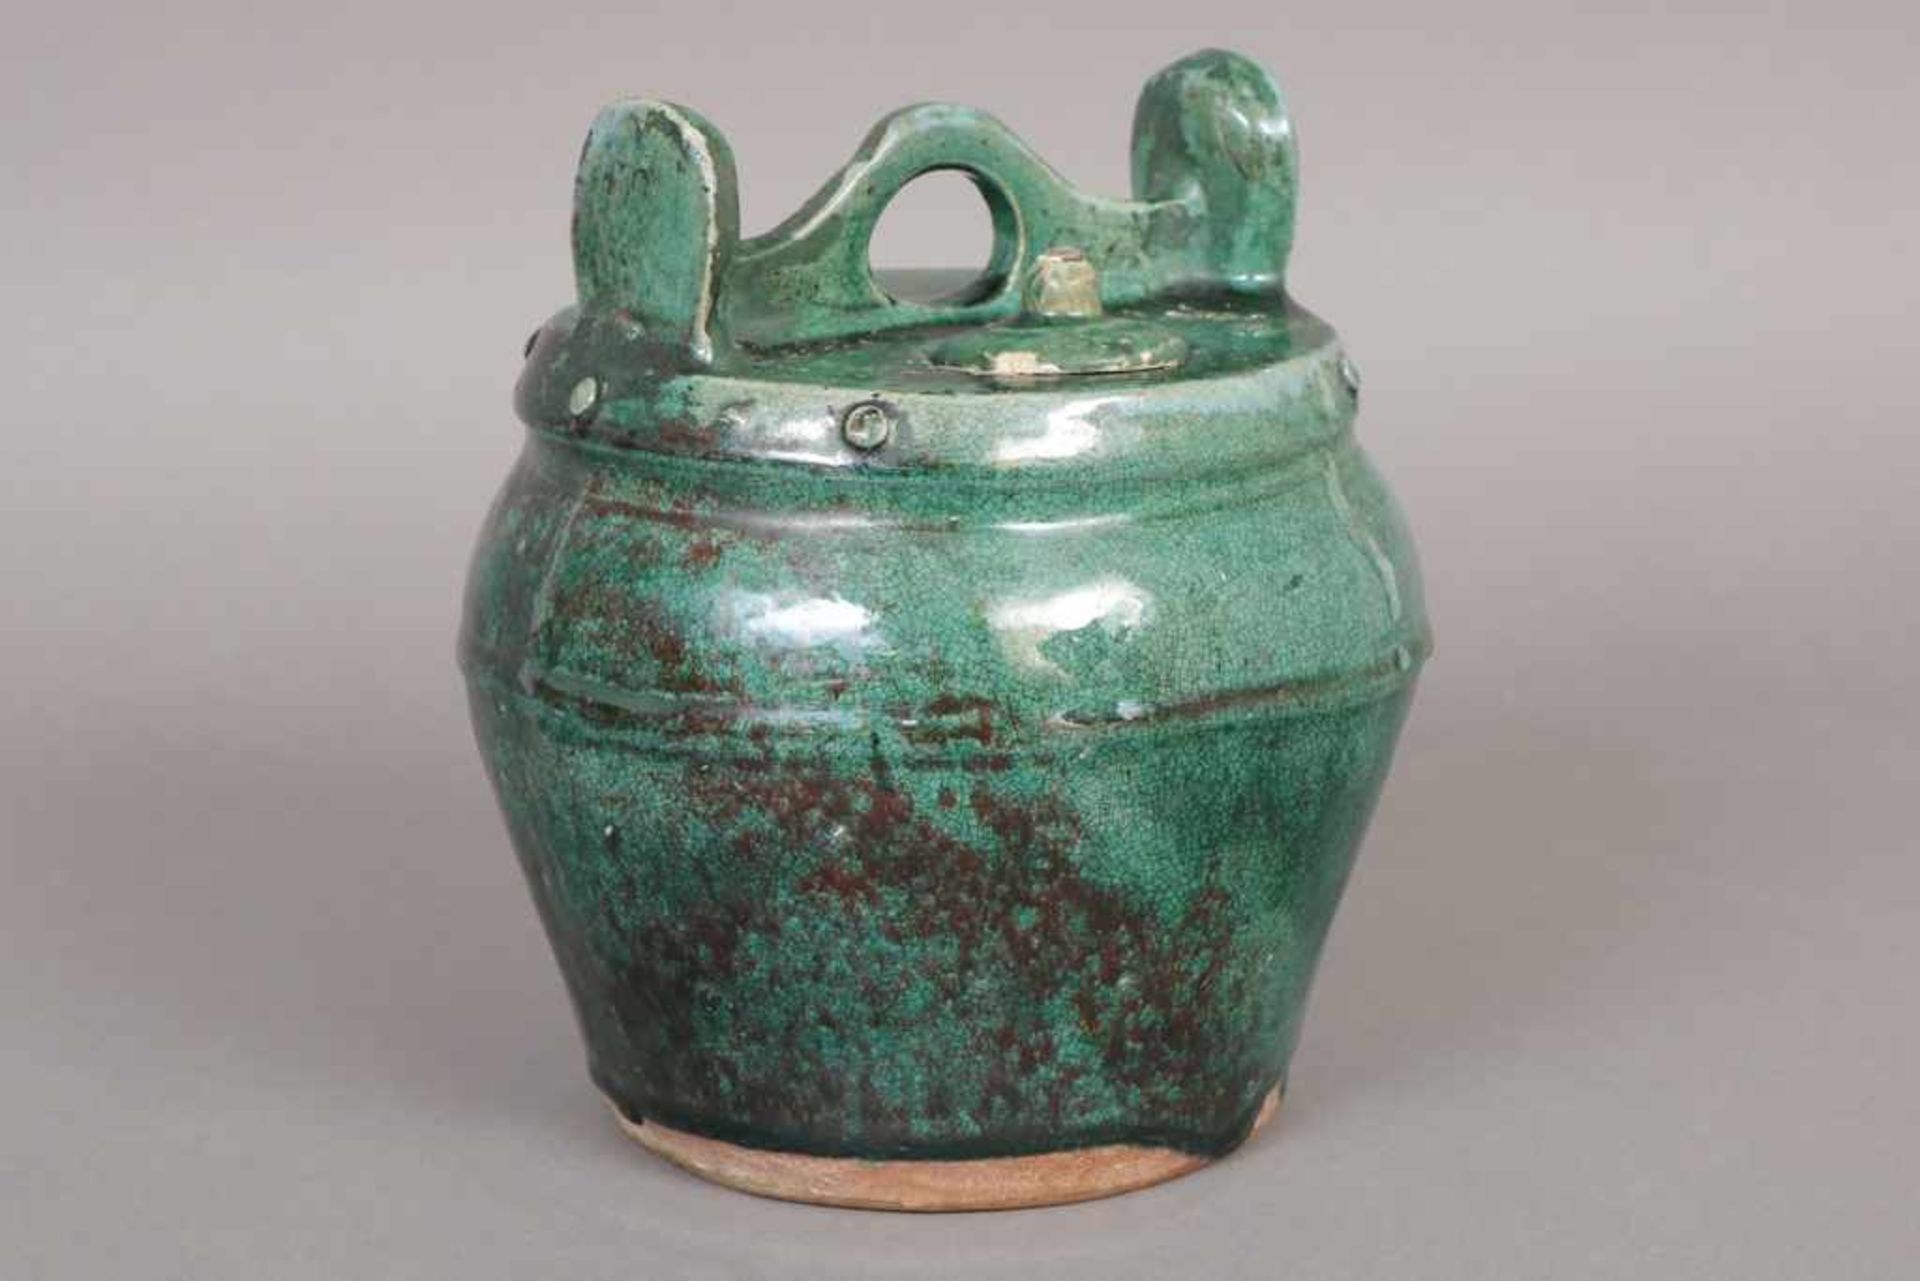 Asiatisches Vorratsgefäß/Kanne Keramik, jadegrün glasiert, China, Qing-Dynastie, kurzer Ausguss, - Image 2 of 3